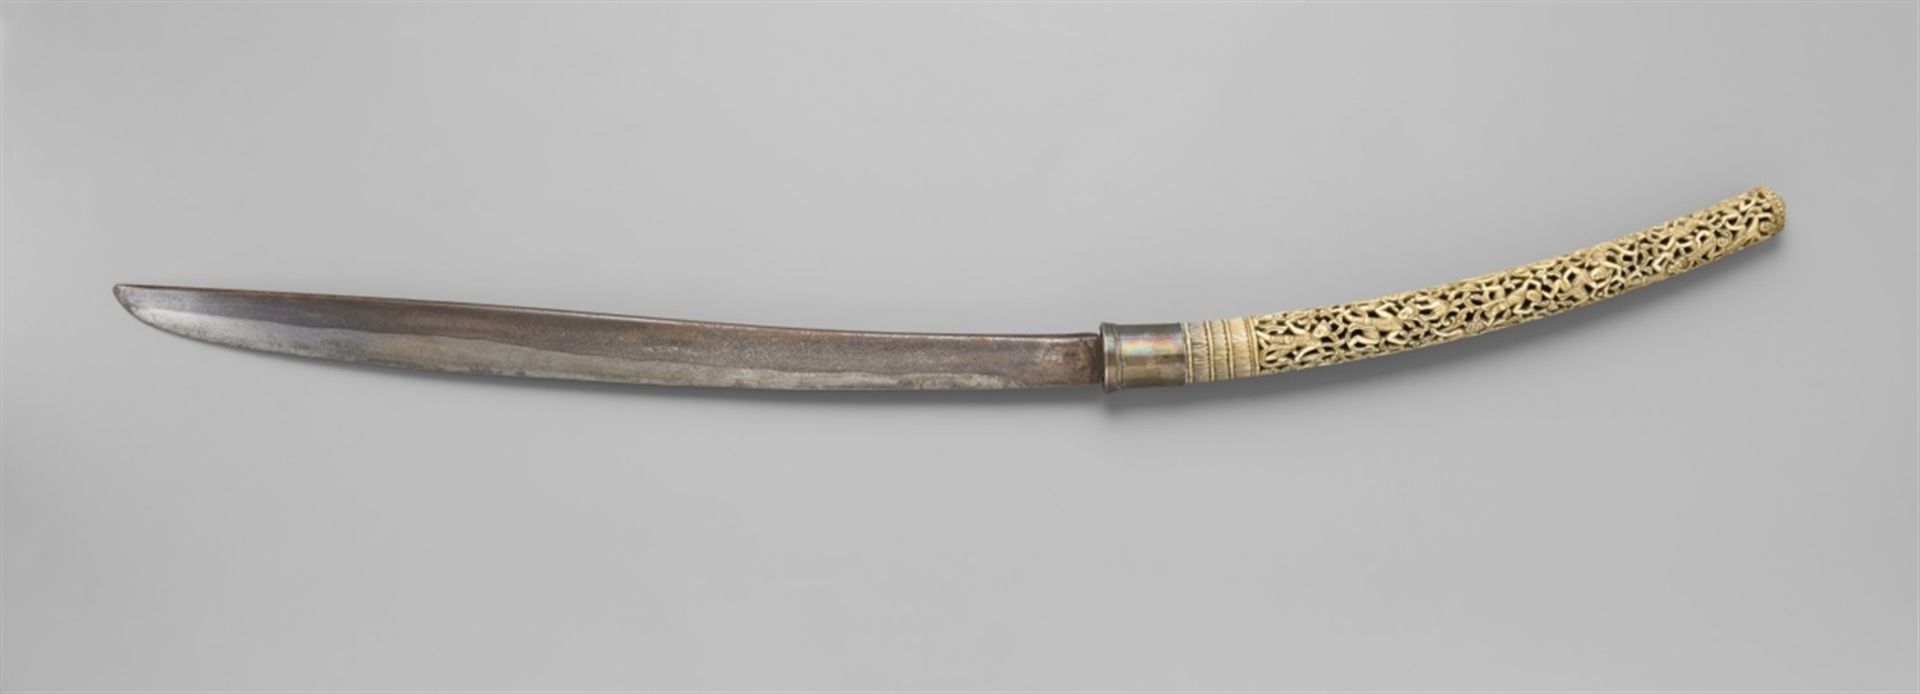 Langes Schwert (dha). Birma 19. Jh. Lange einschneidige, wenig gebogene Stahlklinge. Der lange Griff